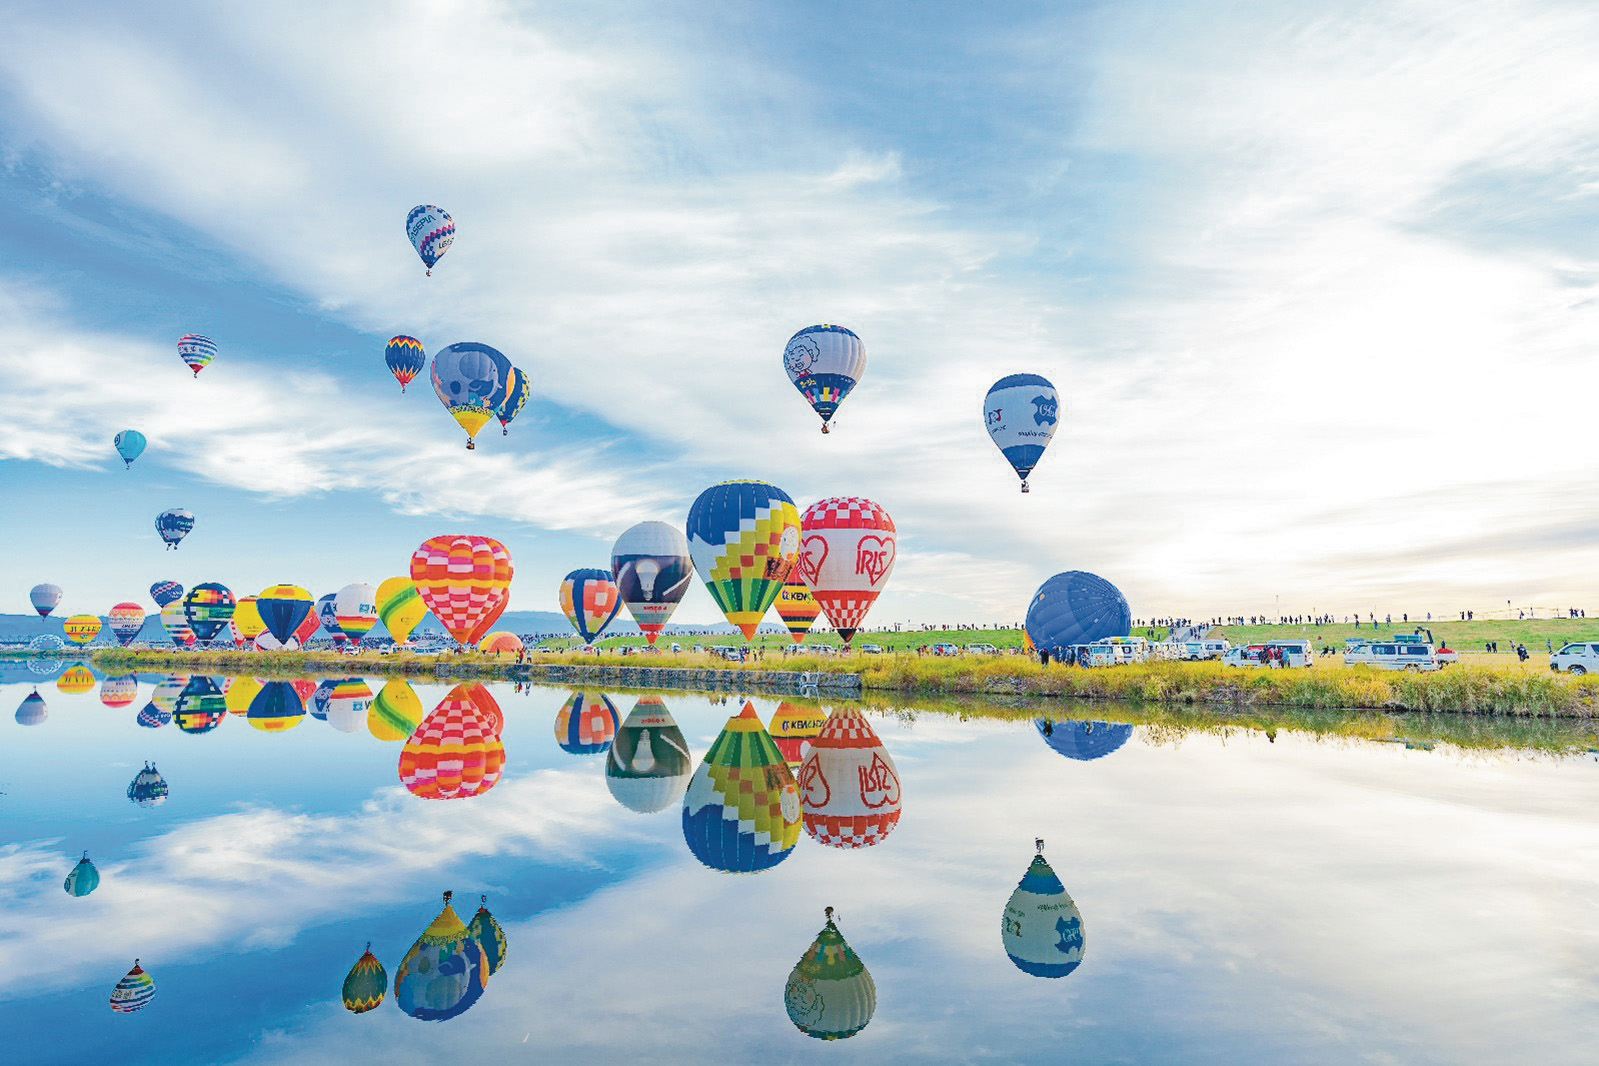 アジア最大級の熱気球の祭典「佐賀インターナショナルバルーンフェスタ」